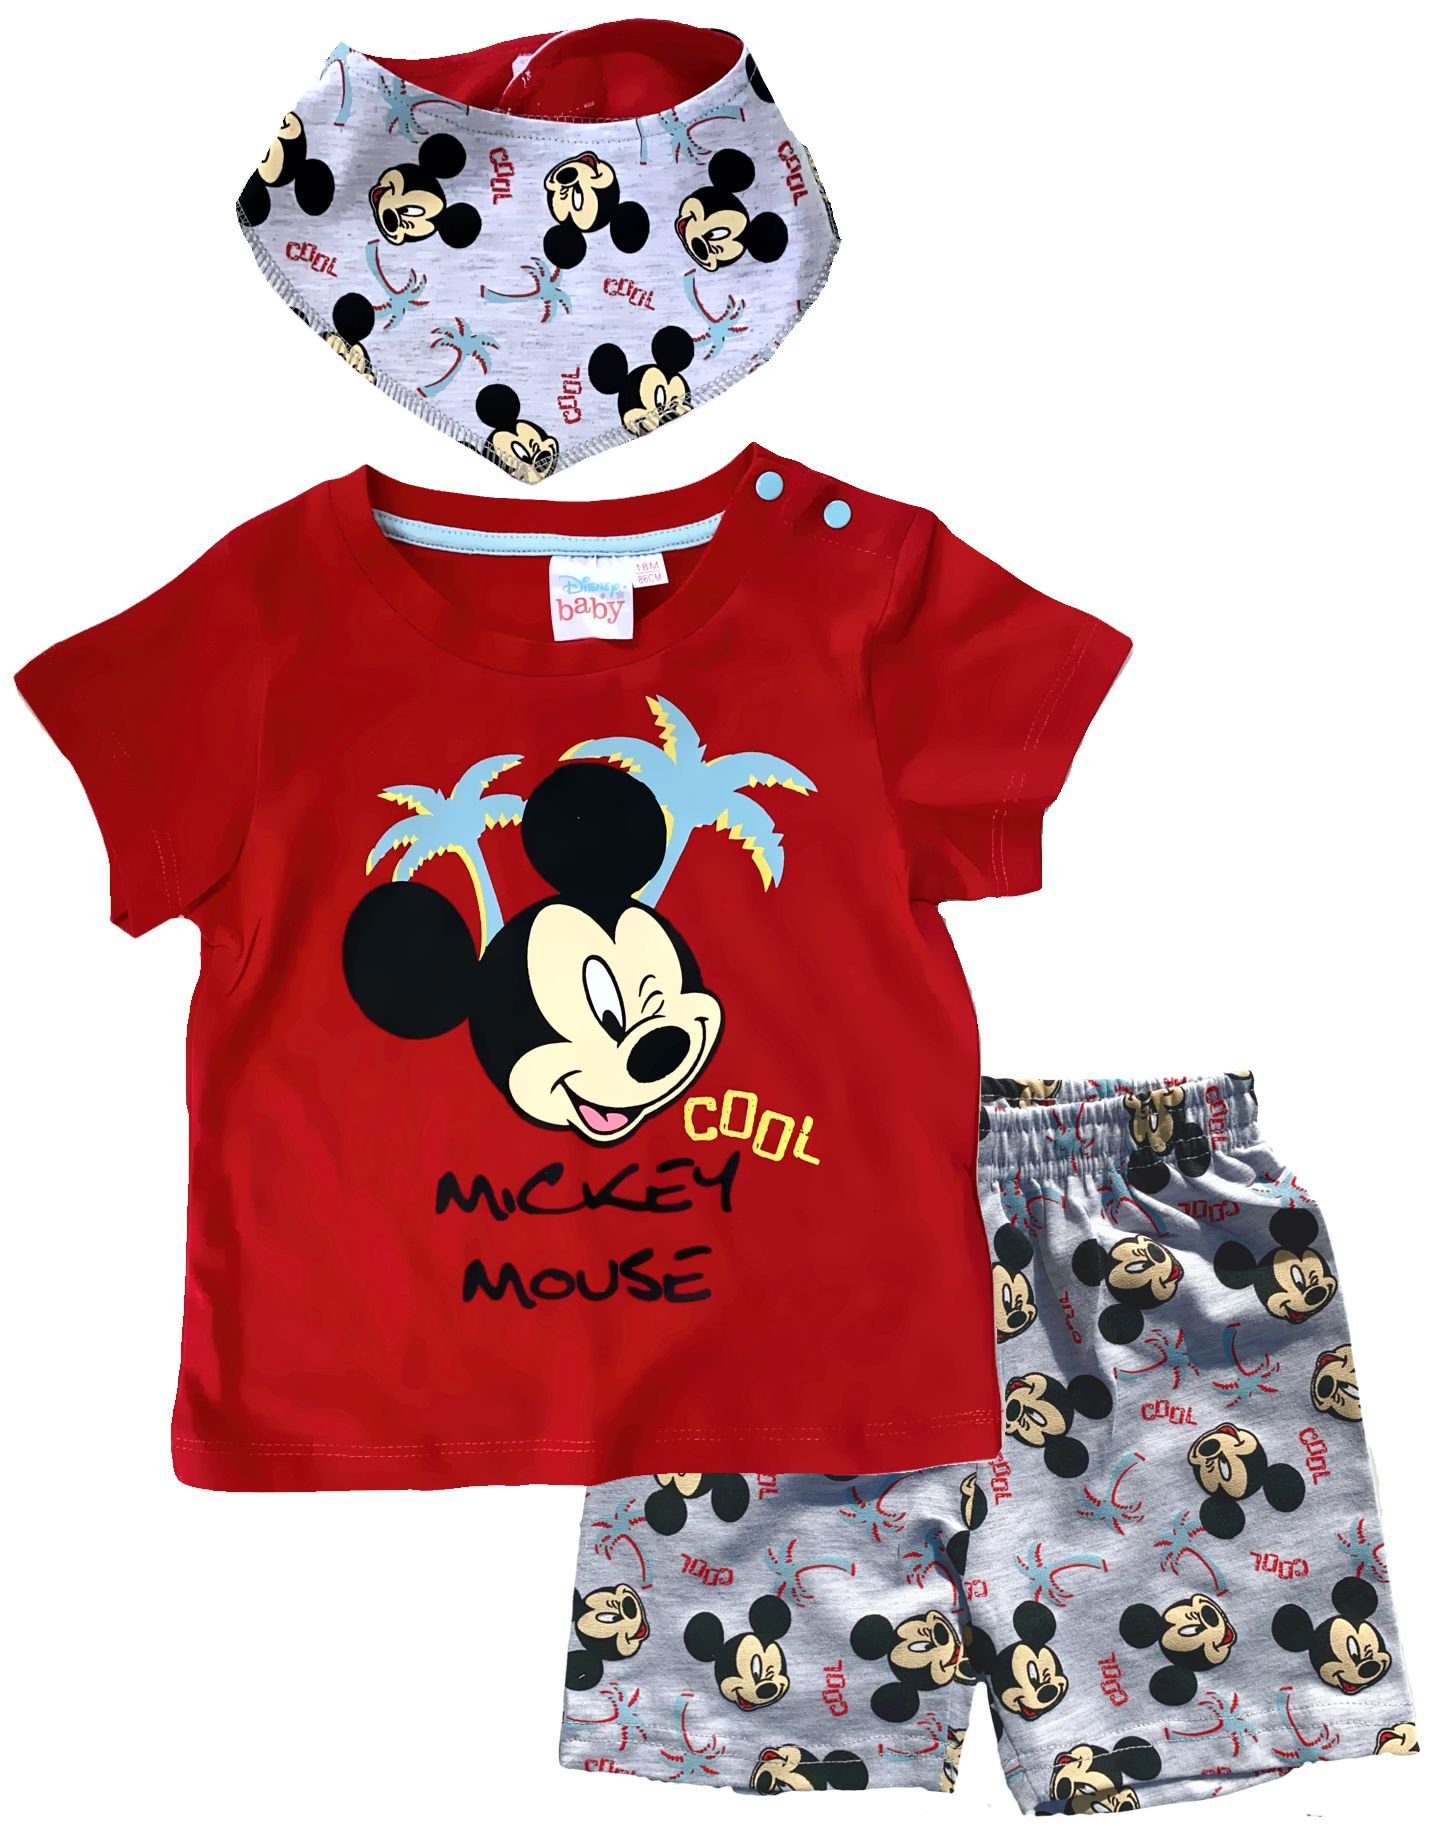 NEU!Disney Mickey Mouse kurzarm Baby Body|Baumwolle|56/62/68/74/80/86|blau|weiss 